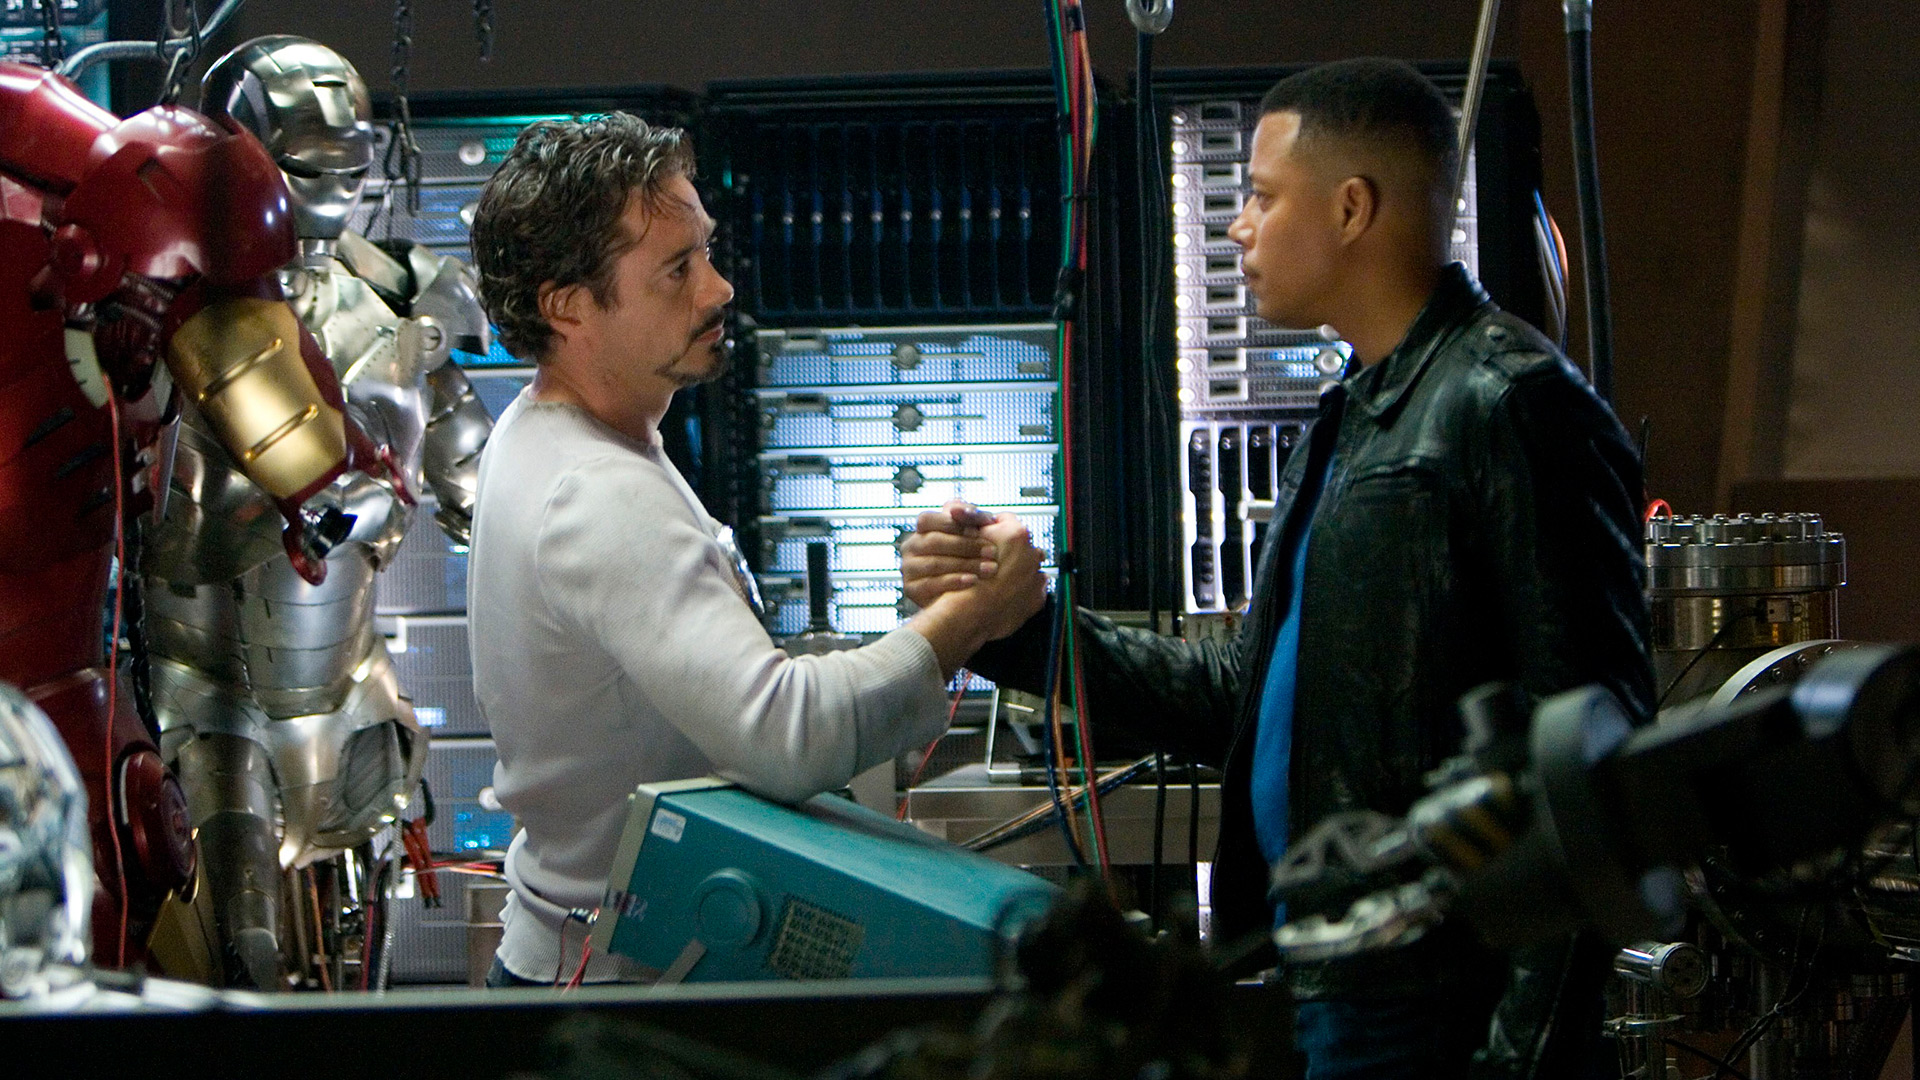 Robert Downey Jr. y Terrence Howard cuando grabaron una de las escenas en Iron Man.

Shutterstock